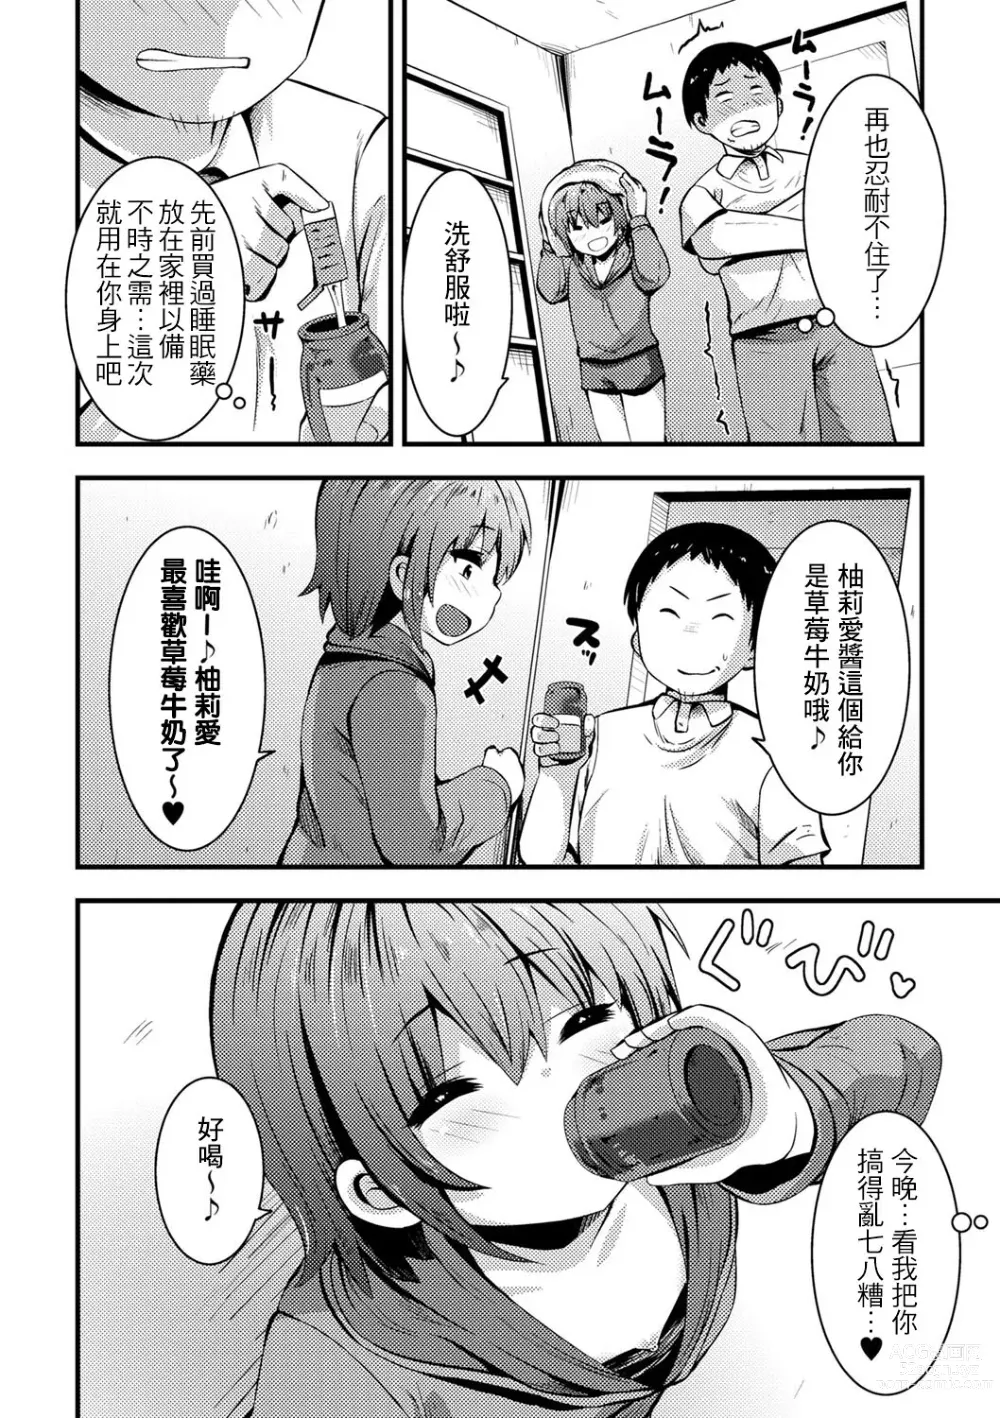 Page 9 of manga Azukari Meikko Time